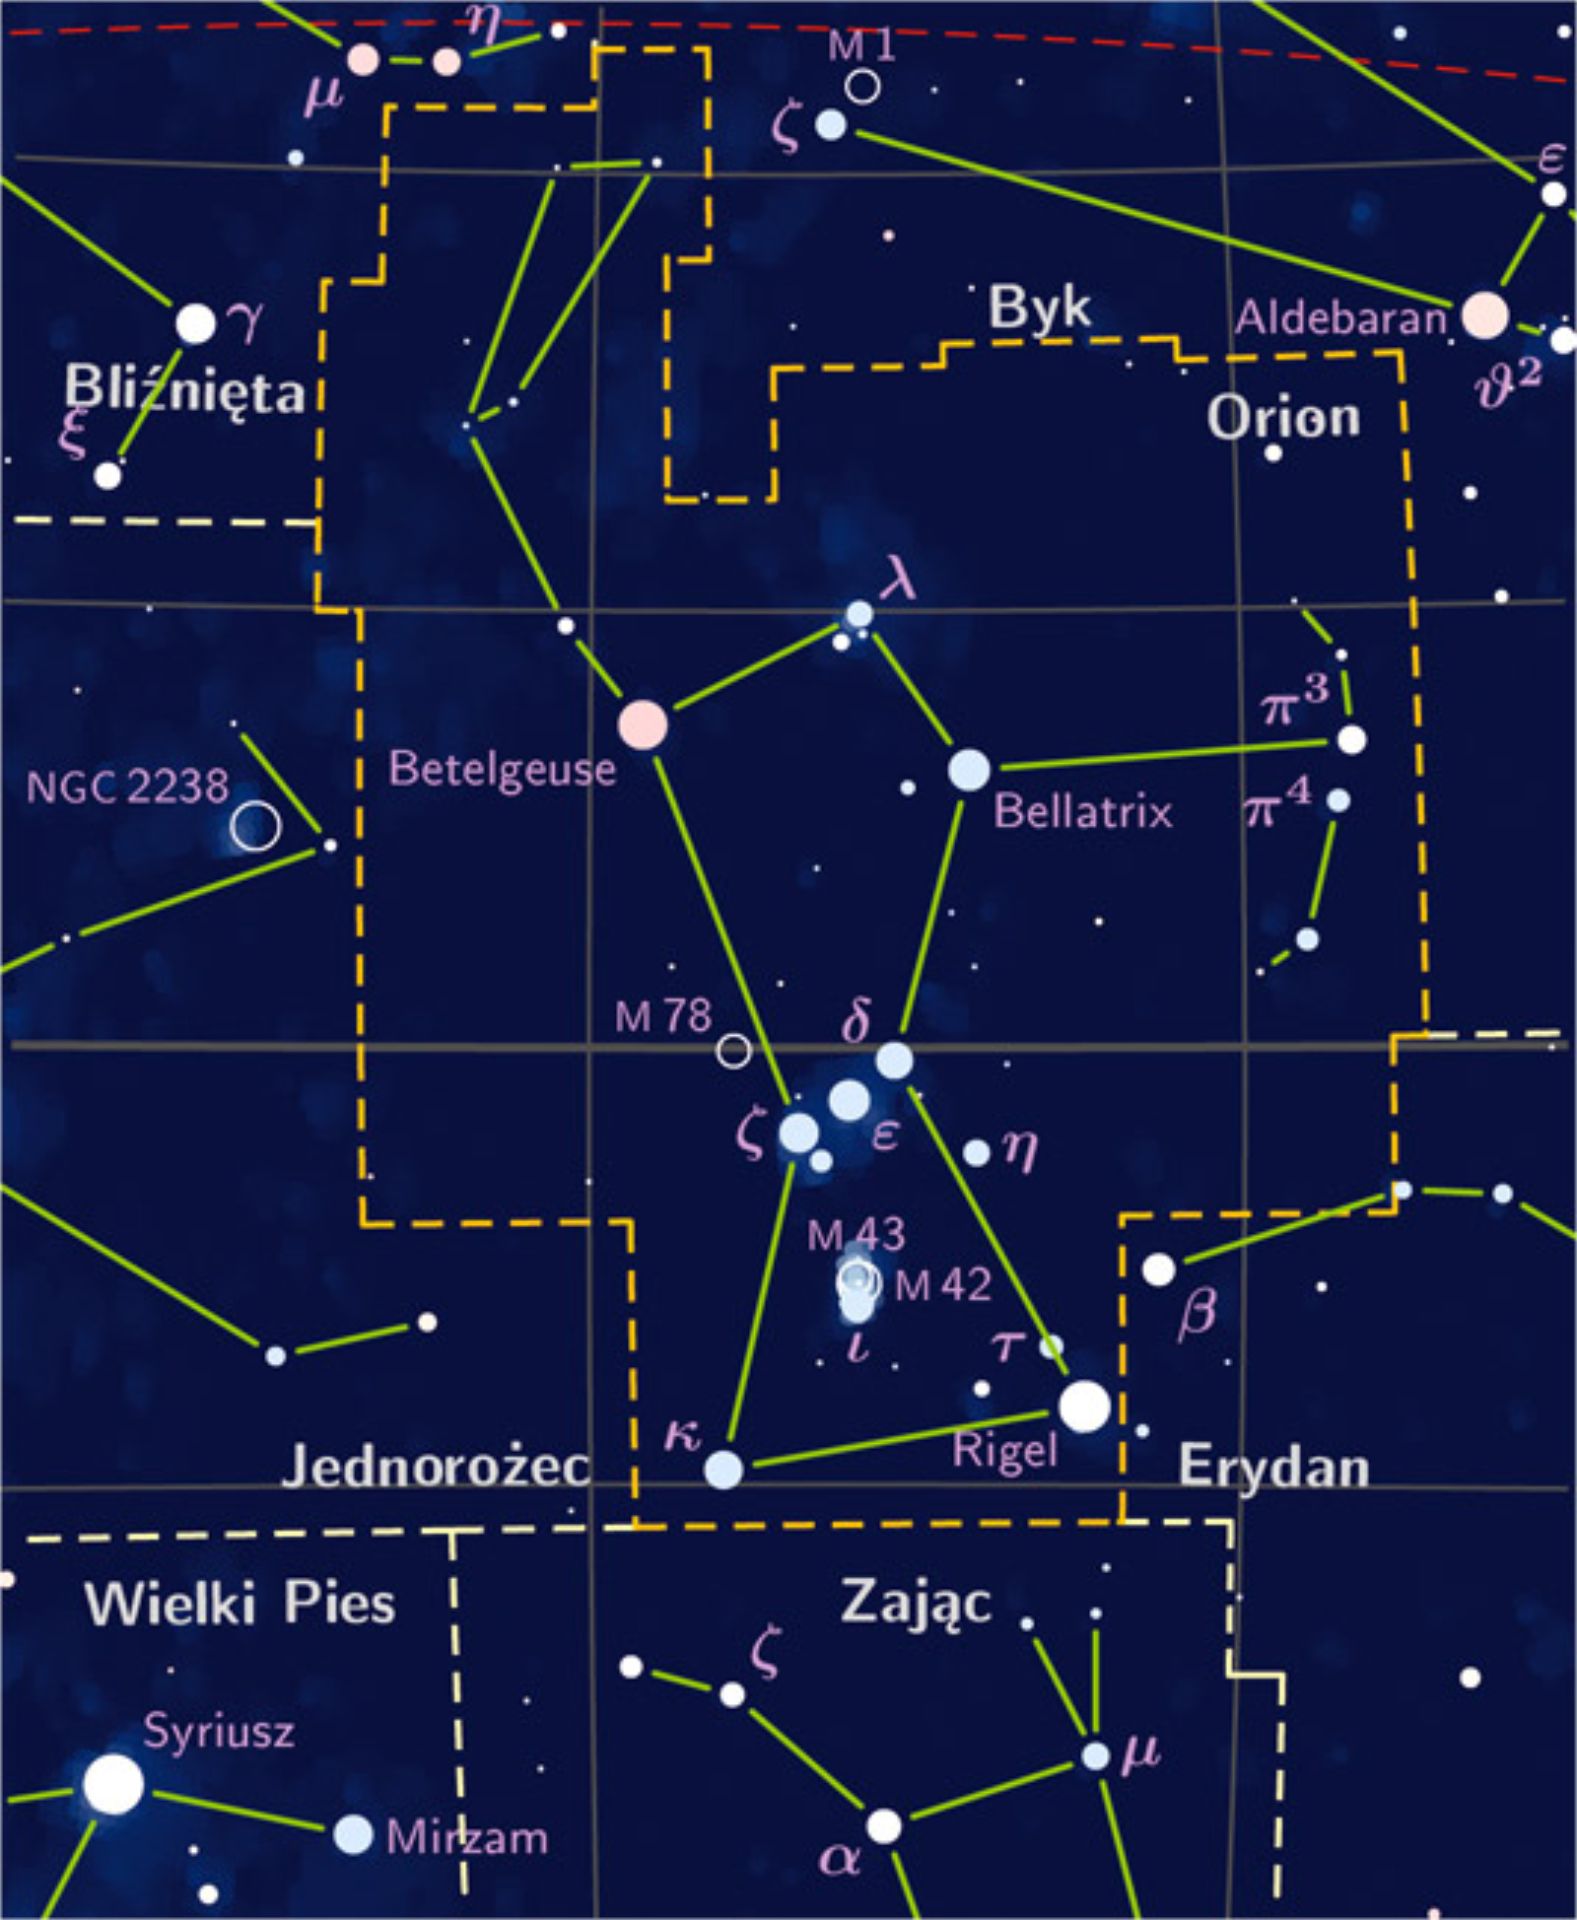 Powiększ obraz: <p>Gwiazdozbi&oacute;r radiantu</p>
<p>Licencja <a href="https://pl.wikipedia.org/wiki/Orionidy#/media/Plik:Orion_constellation_PP3_map_PL.jpg">CC-BY 3.0</a> Wikimedia Commons</p>